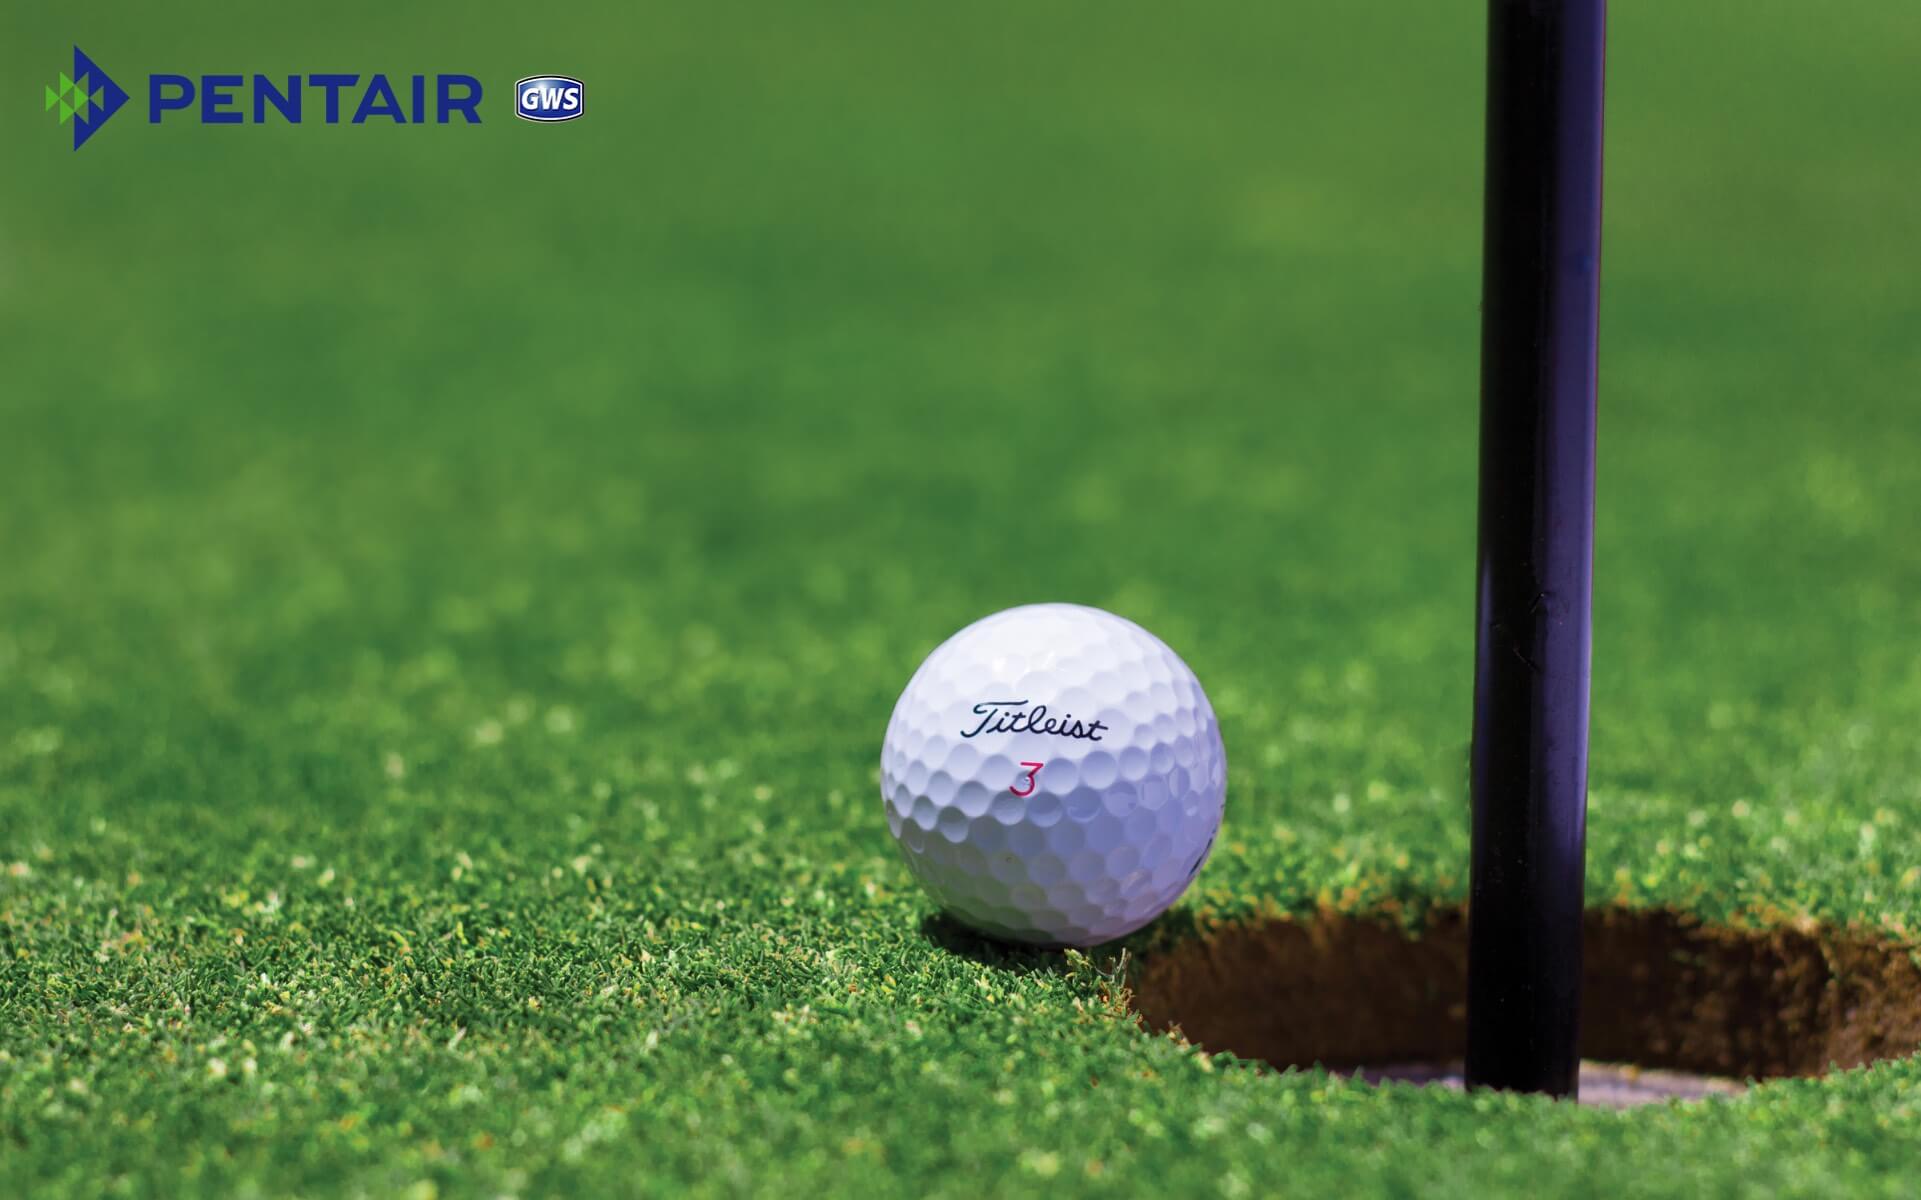 Luật golf được đề ra và quản lý bởi The R&A và USGA